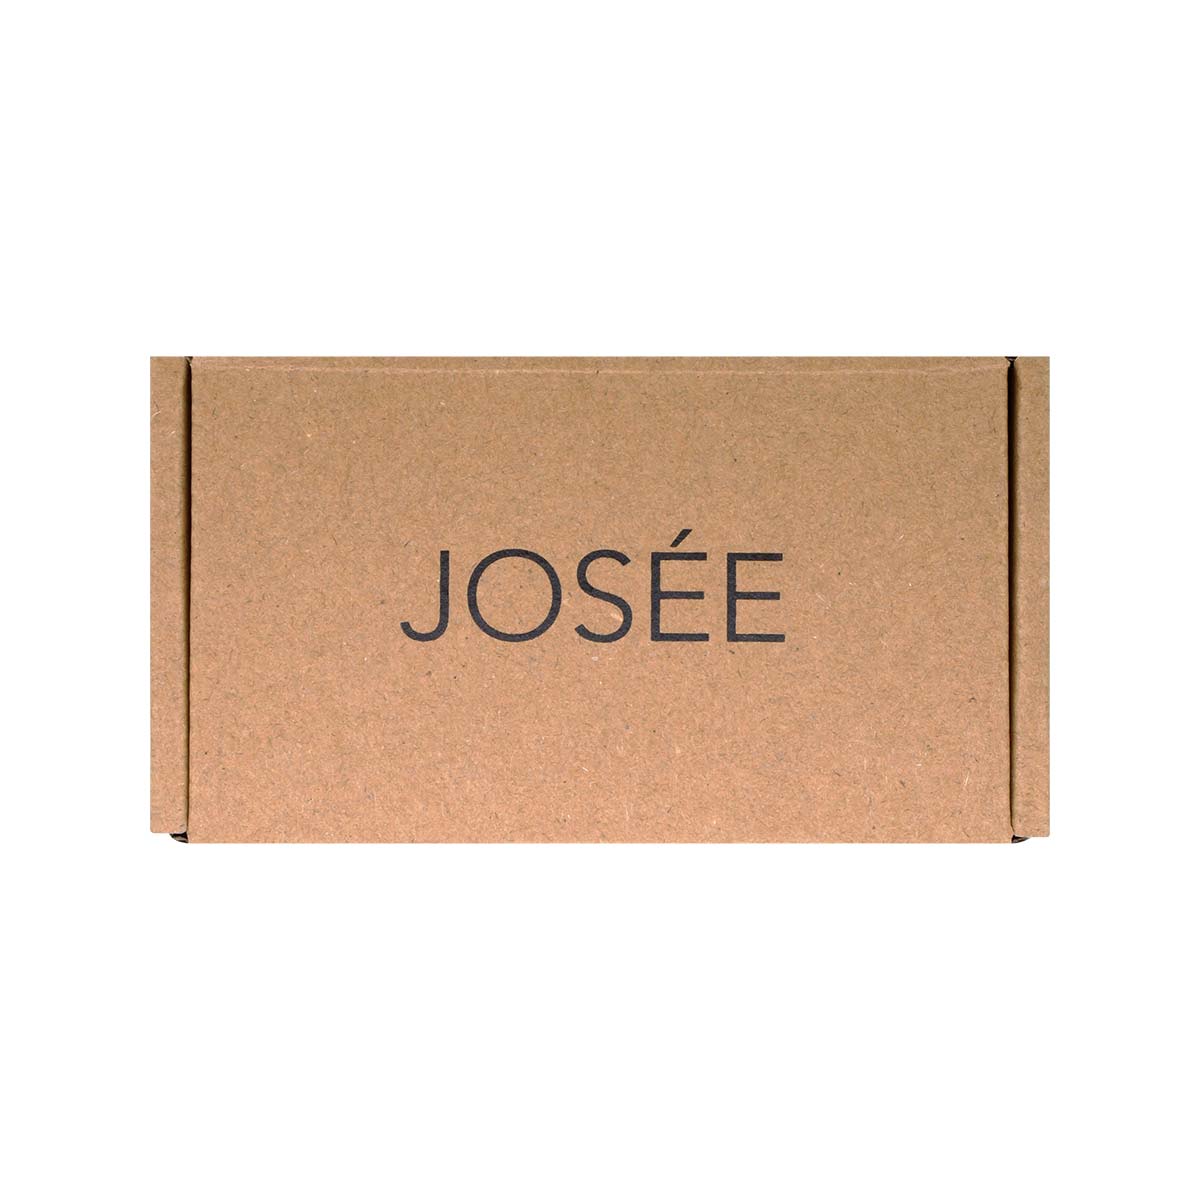 JOSEE (ジョセー) イチジクの木 アロマキャンドル 70g-p_2